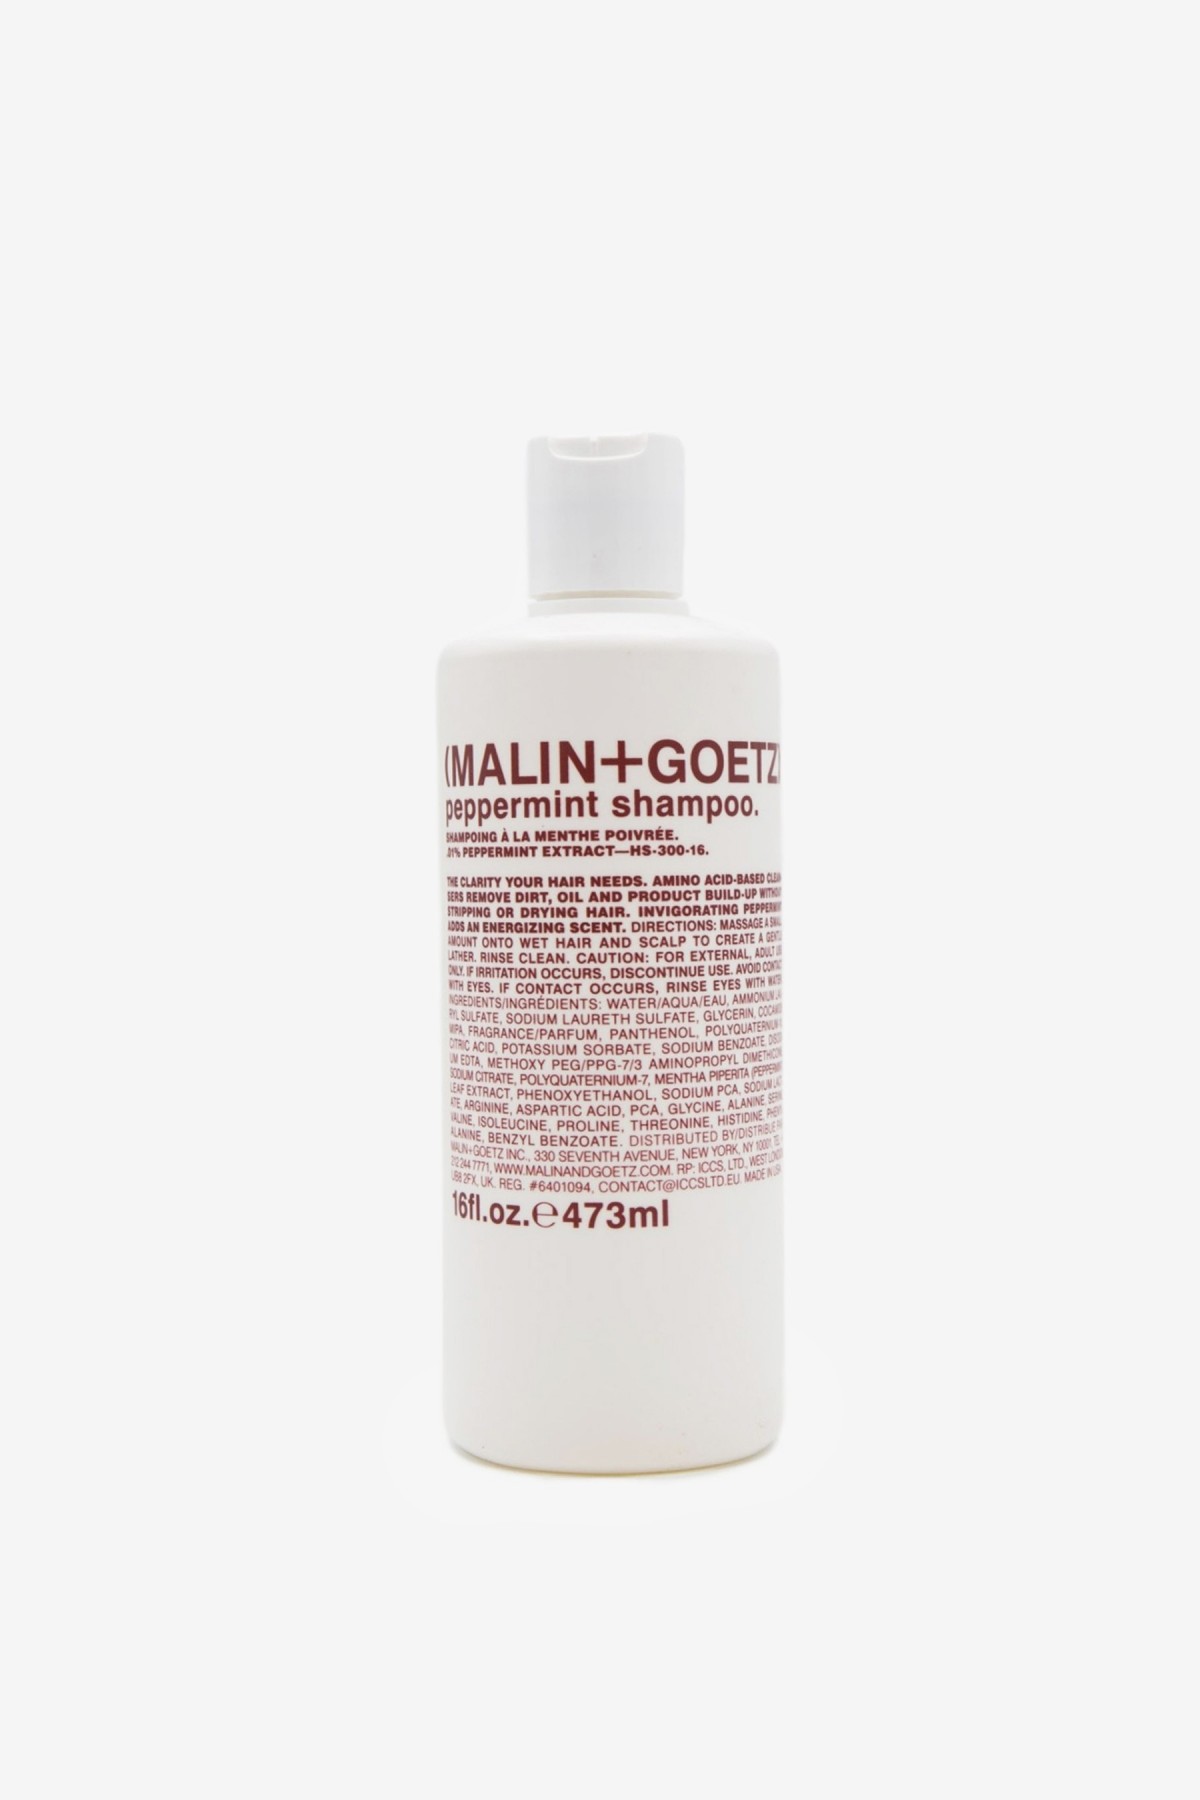 Malin+Goetz Peppermint Shampoo 473ml in 